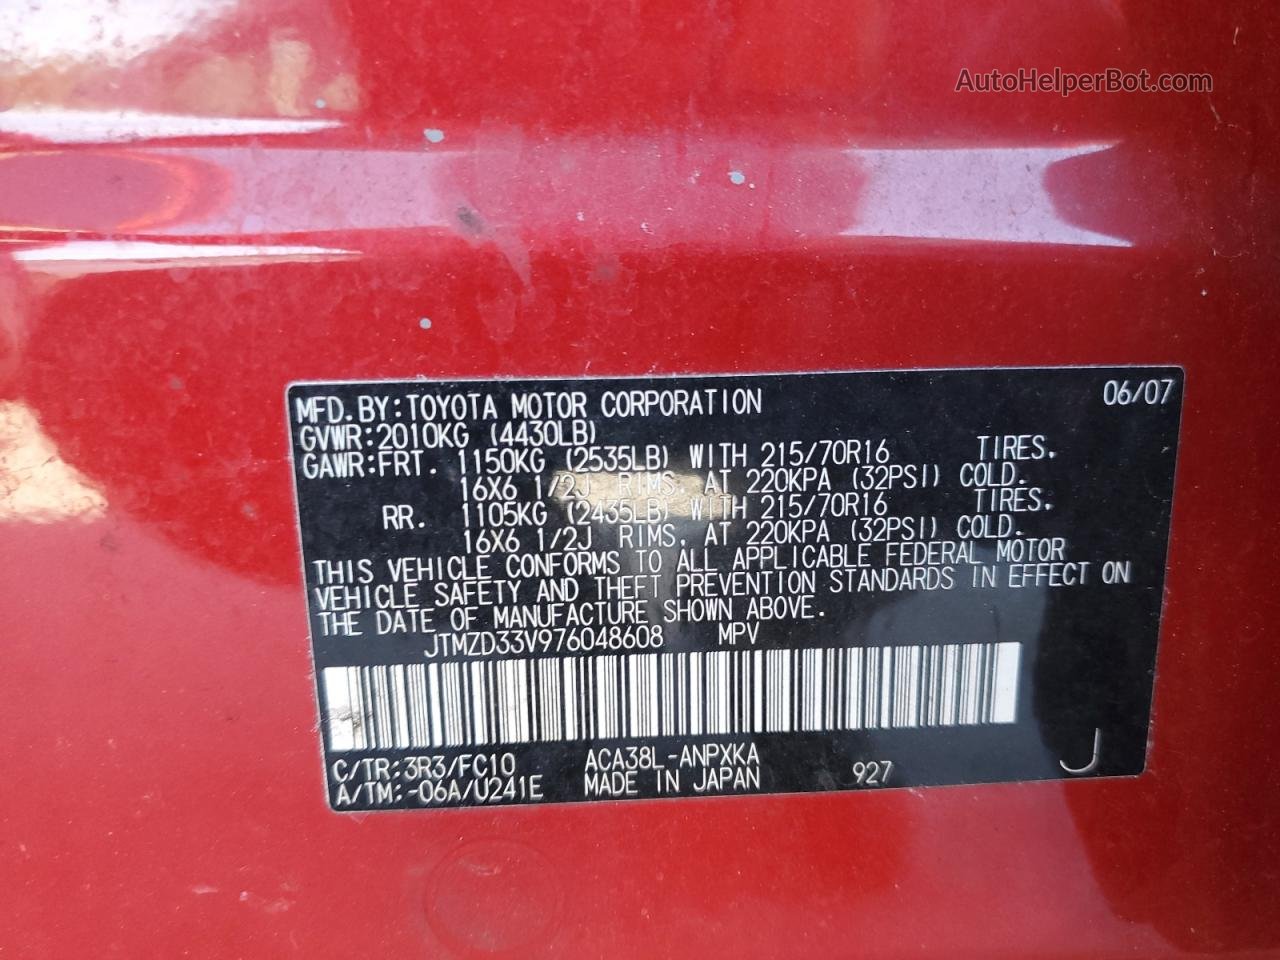 2007 Toyota Rav4  Red vin: JTMZD33V976048608